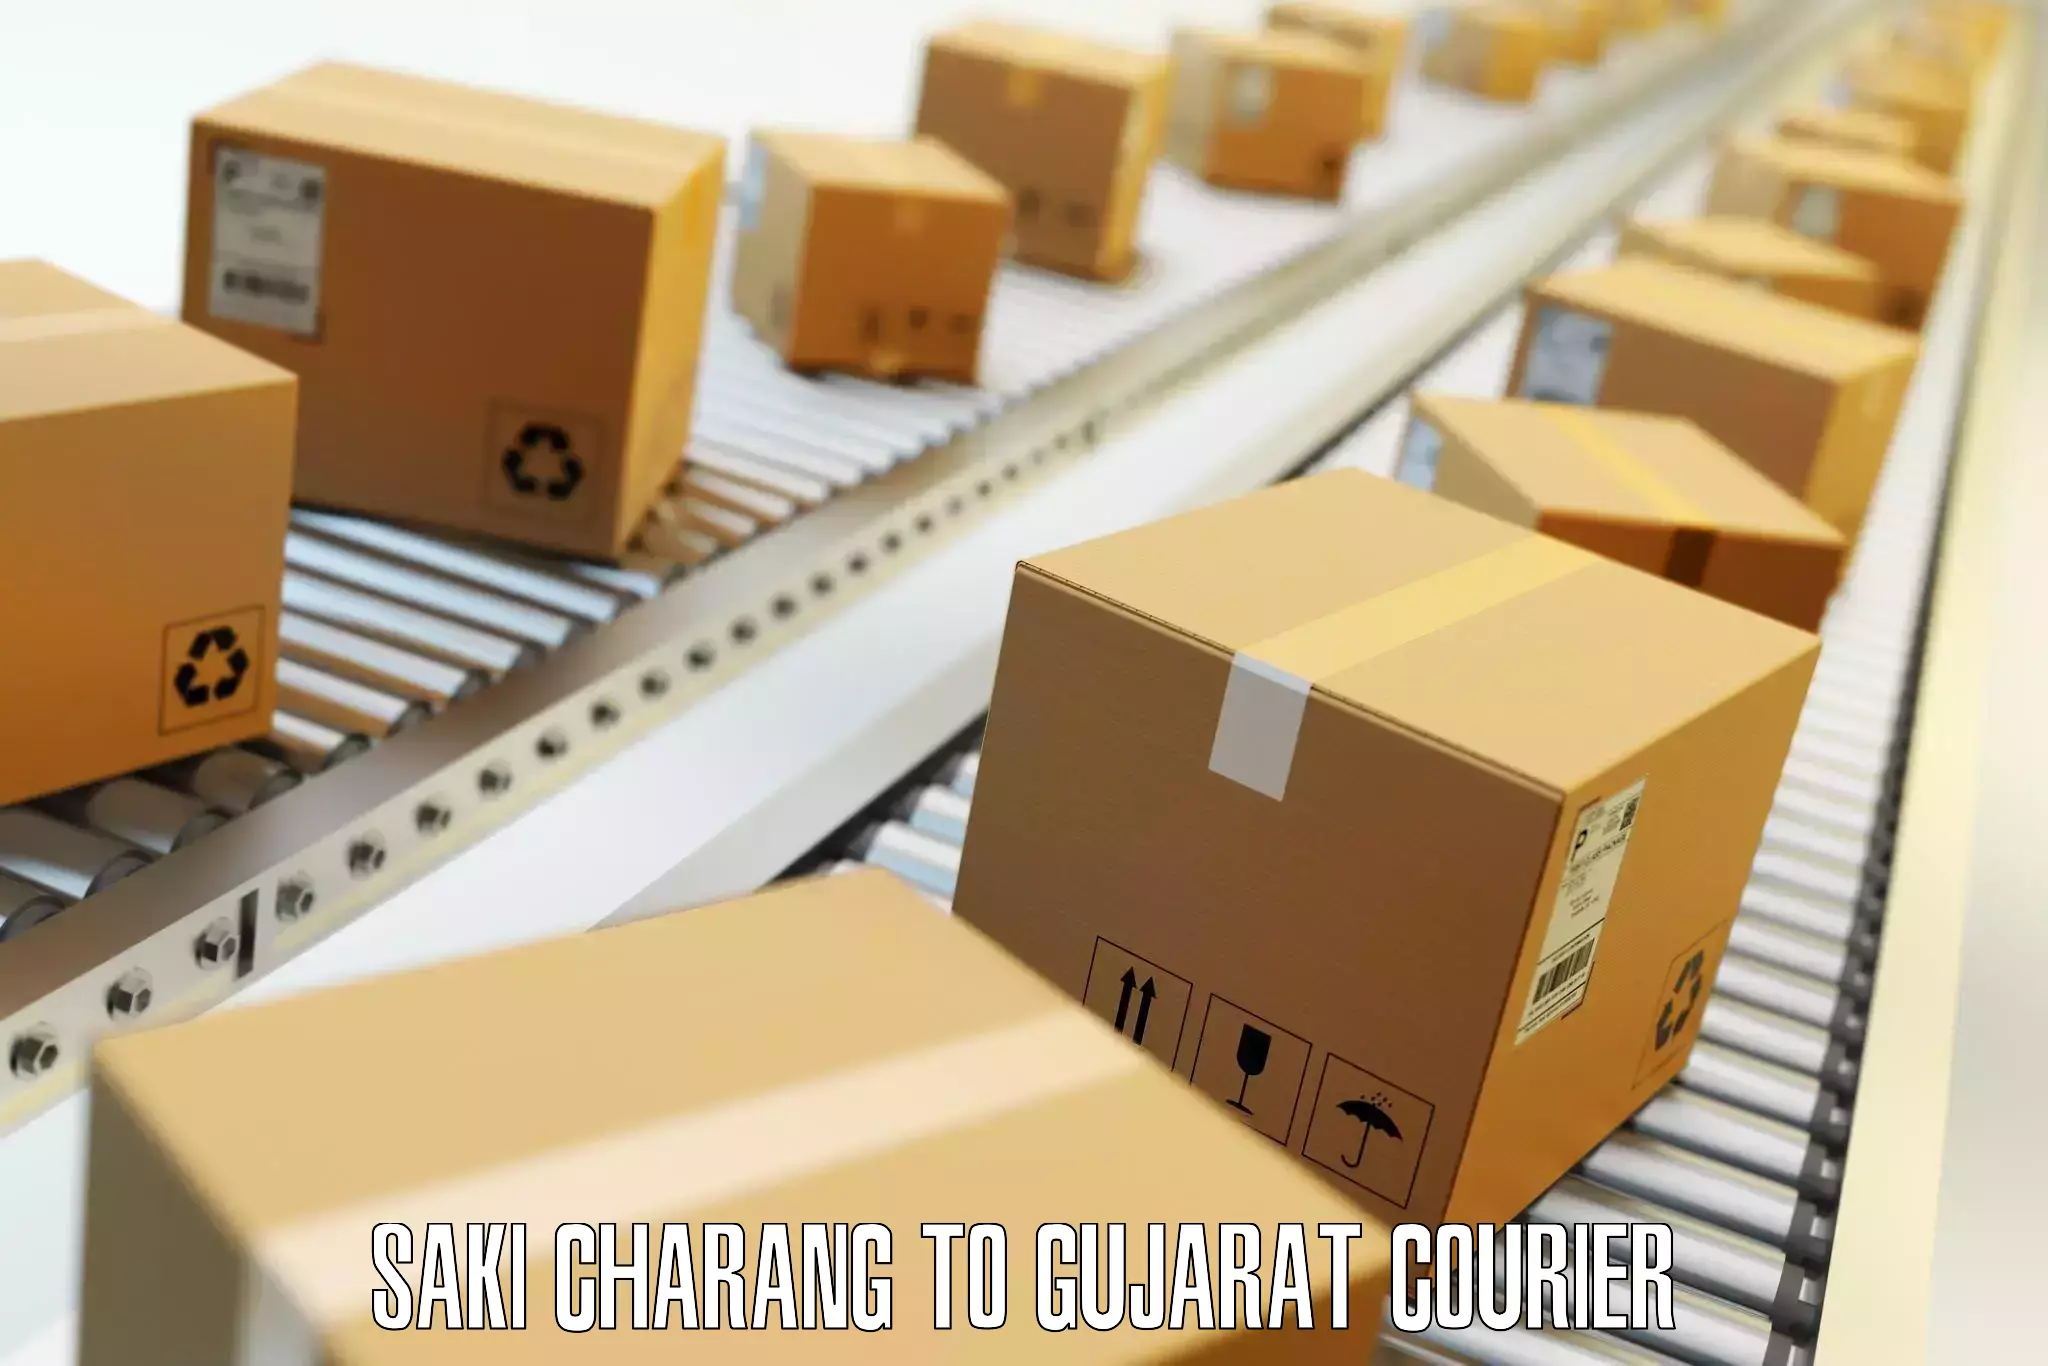 Baggage transport network Saki Charang to Gujarat